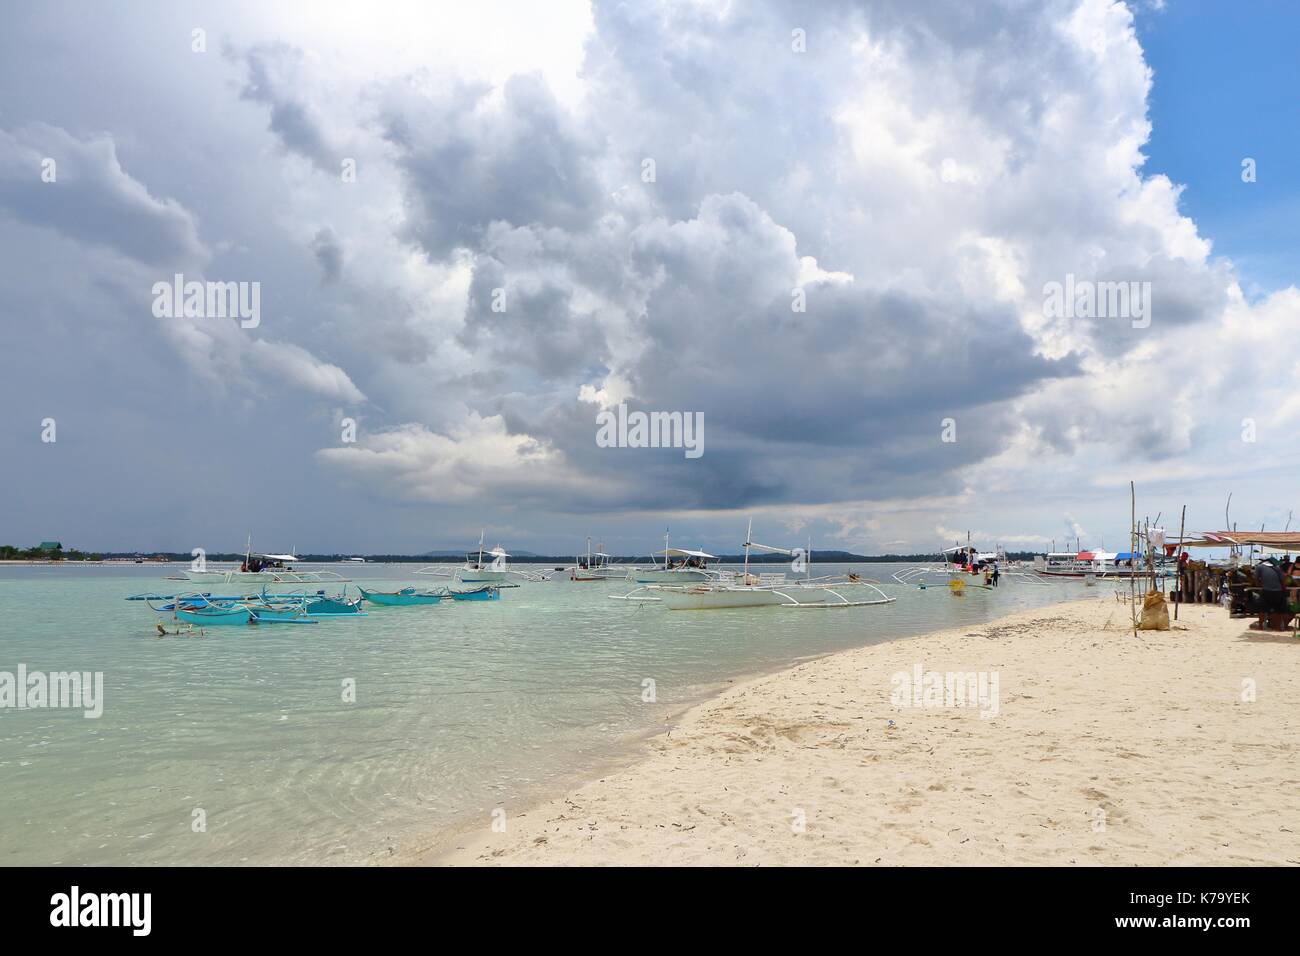 Nuvole di tempesta che si profila all'orizzonte di una barra di sabbia in un paese tropicale. Foto Stock